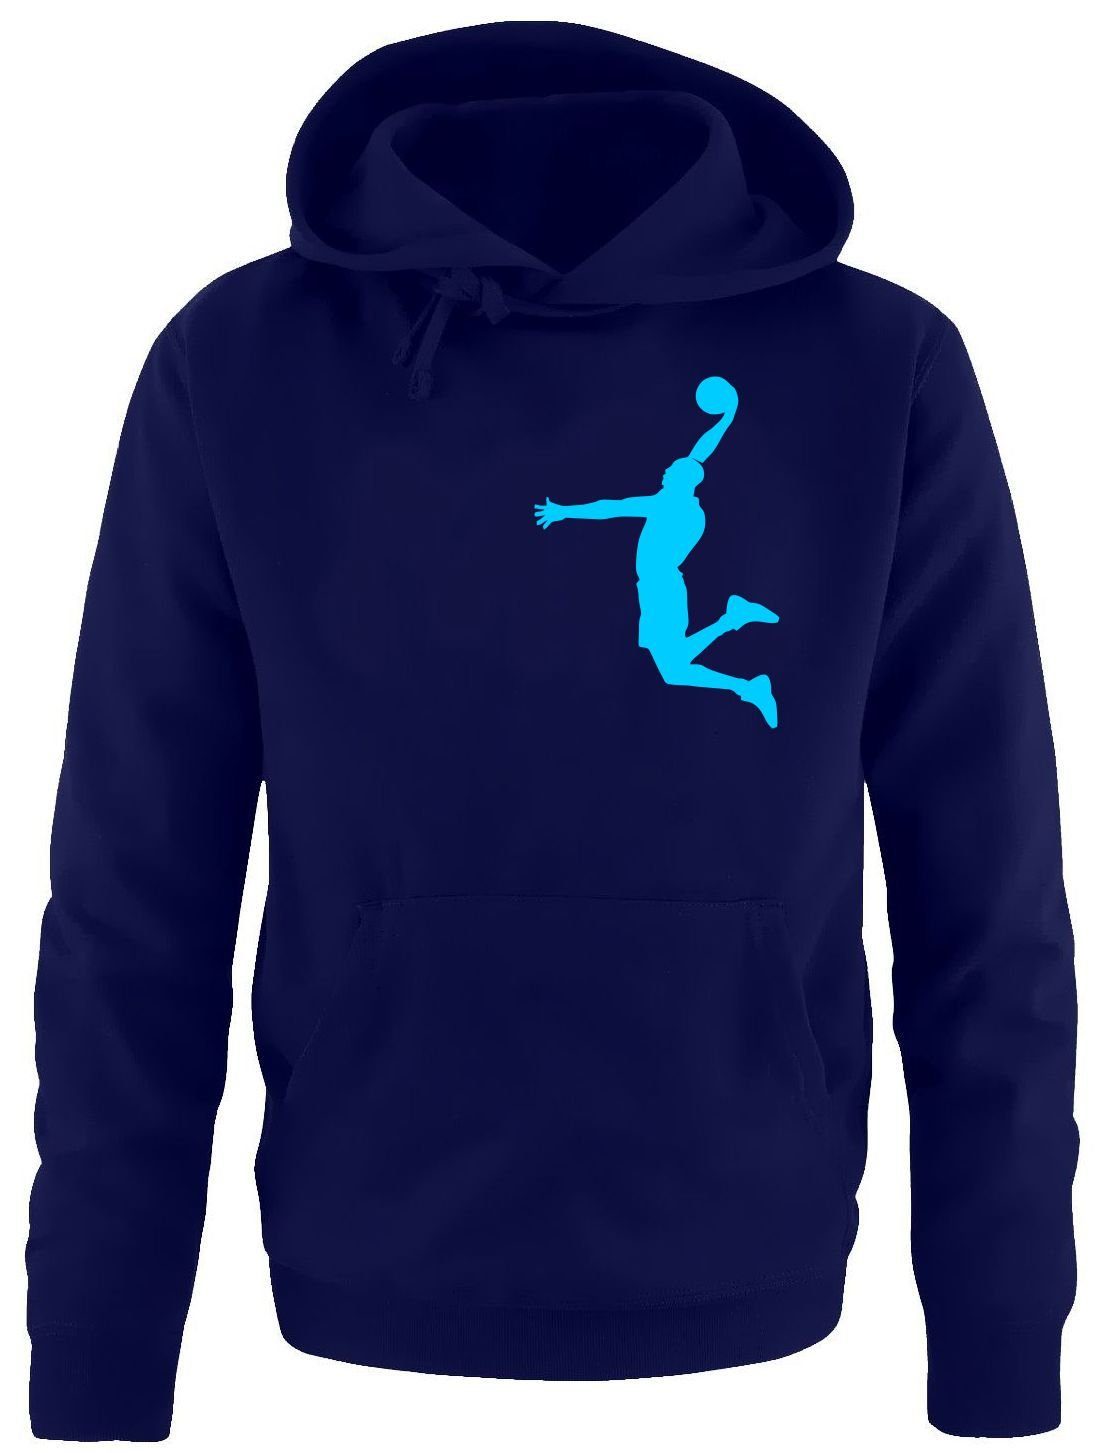 coole-fun-t-shirts Hoodie »Dunk Basketball Slam Dunkin Kinder Sweatshirt  mit Kapuze Hoodie Kids Jungen + Mädchen Gr.128 140 52 164 cm« online kaufen  | OTTO